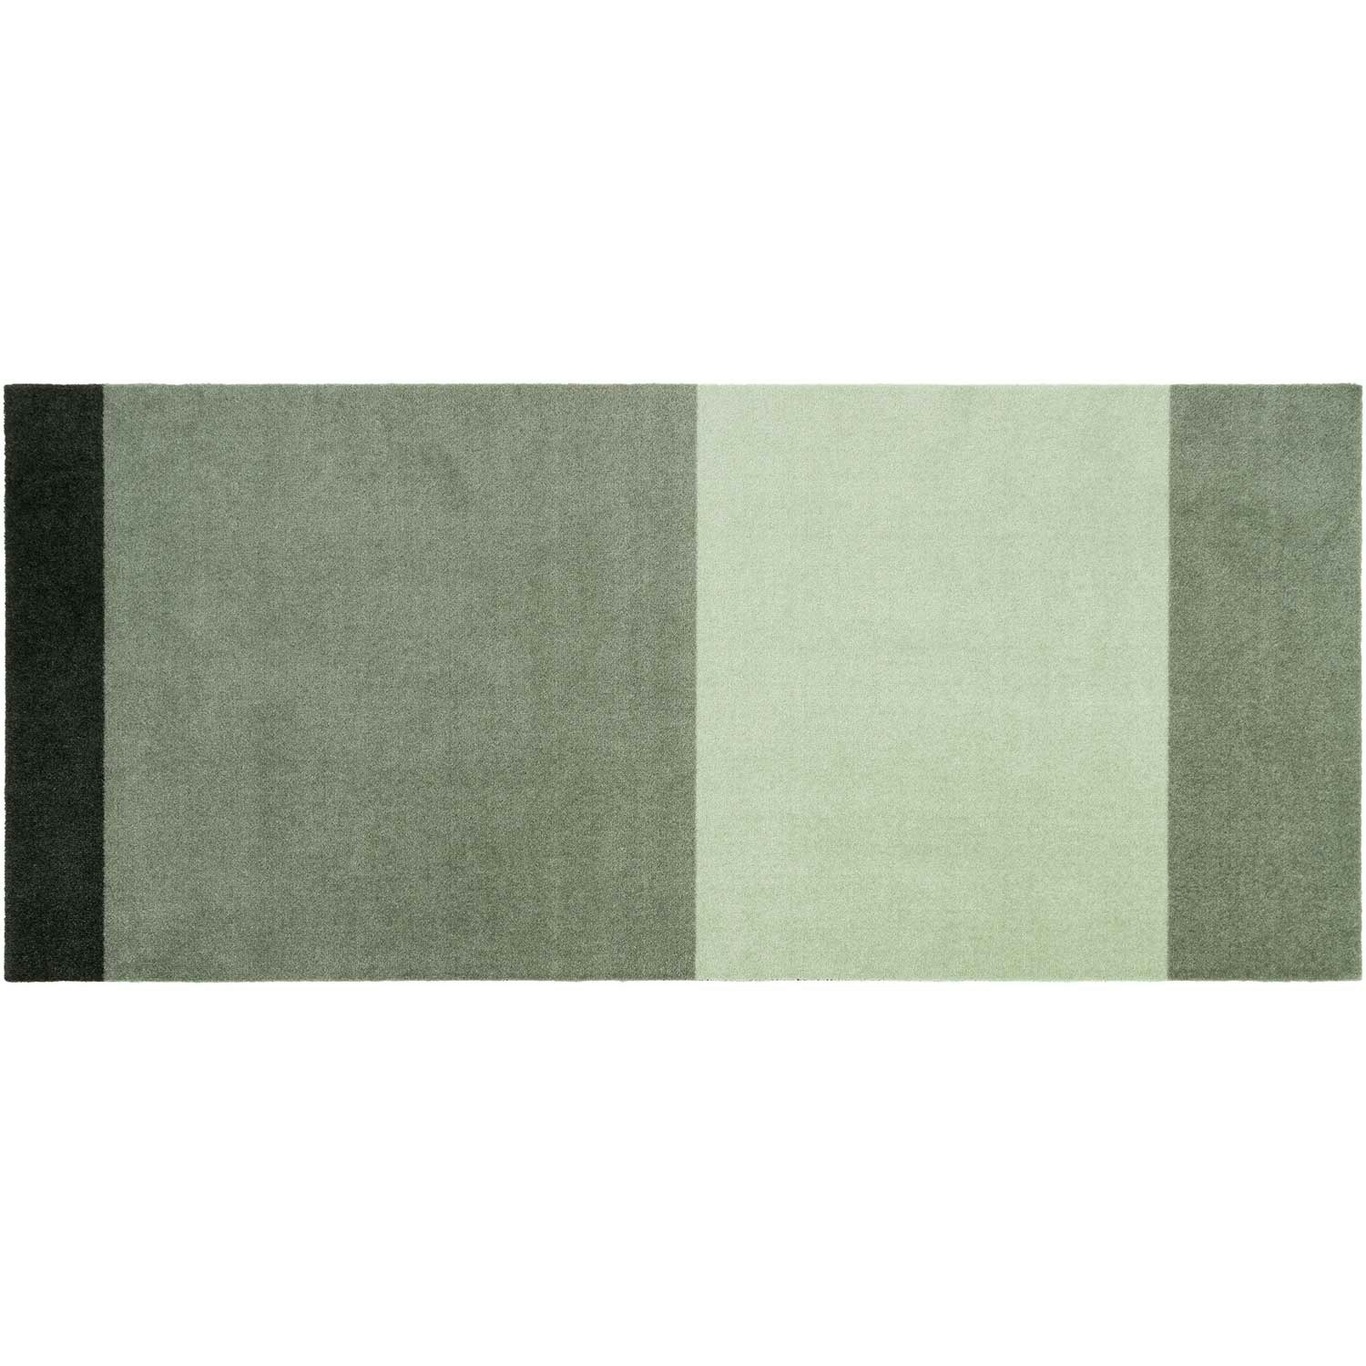 Stripes Vloerkleed Lichtgroen / Donkergroen, 90x200 cm